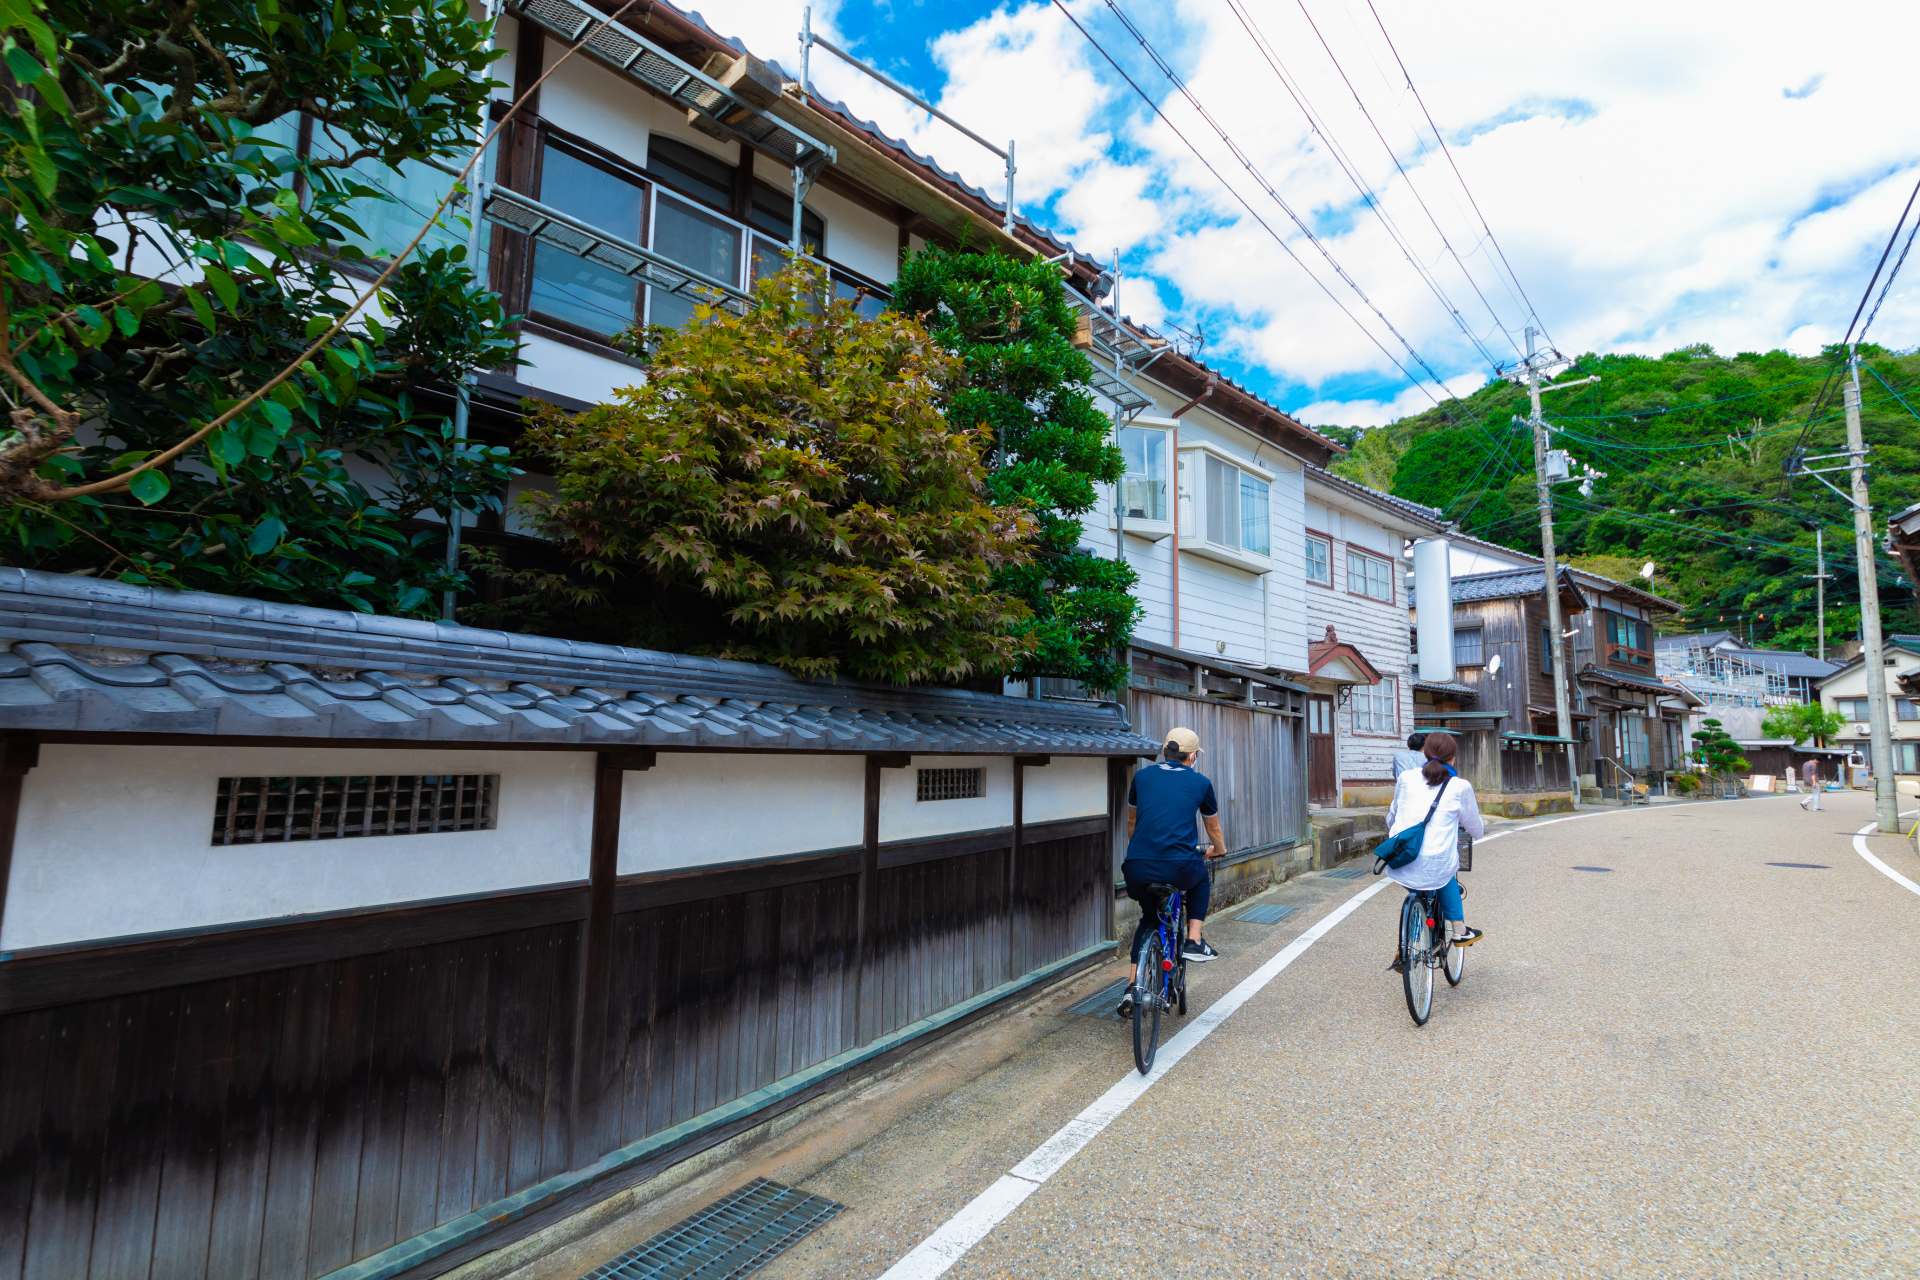 Faire du vélo autour de la ville d'Ine. Il y a des brasseries japonaises locales de saké et des cafés à bateaux.